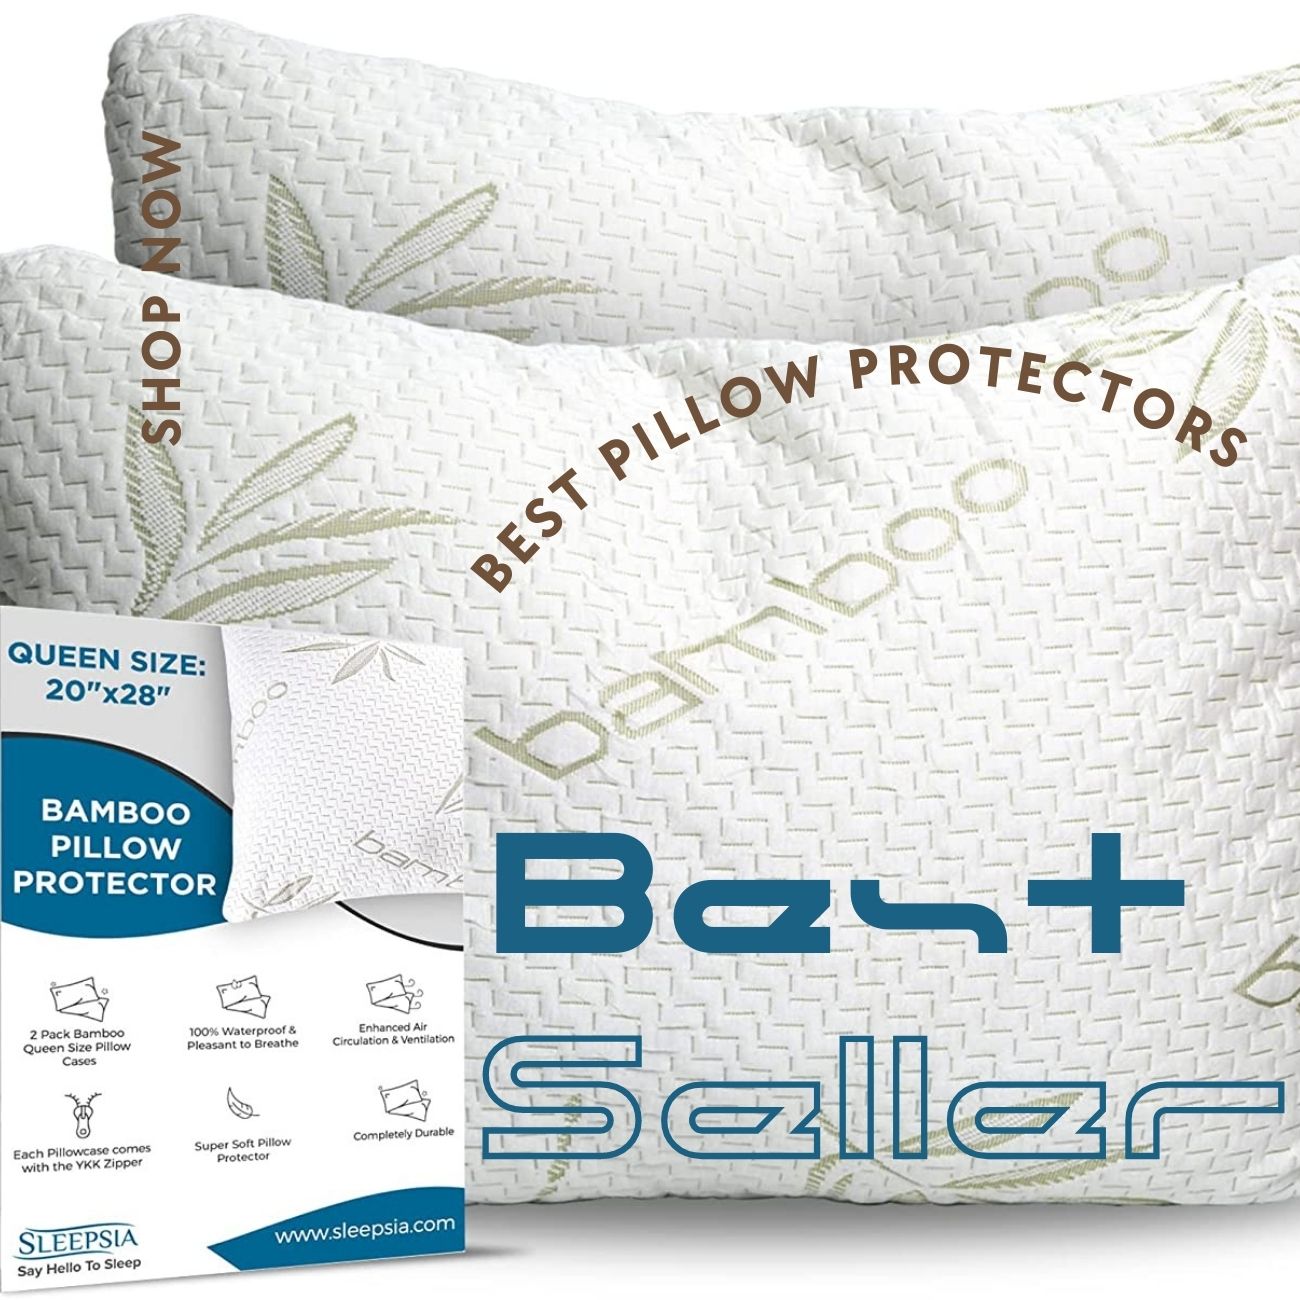 pillow protectors